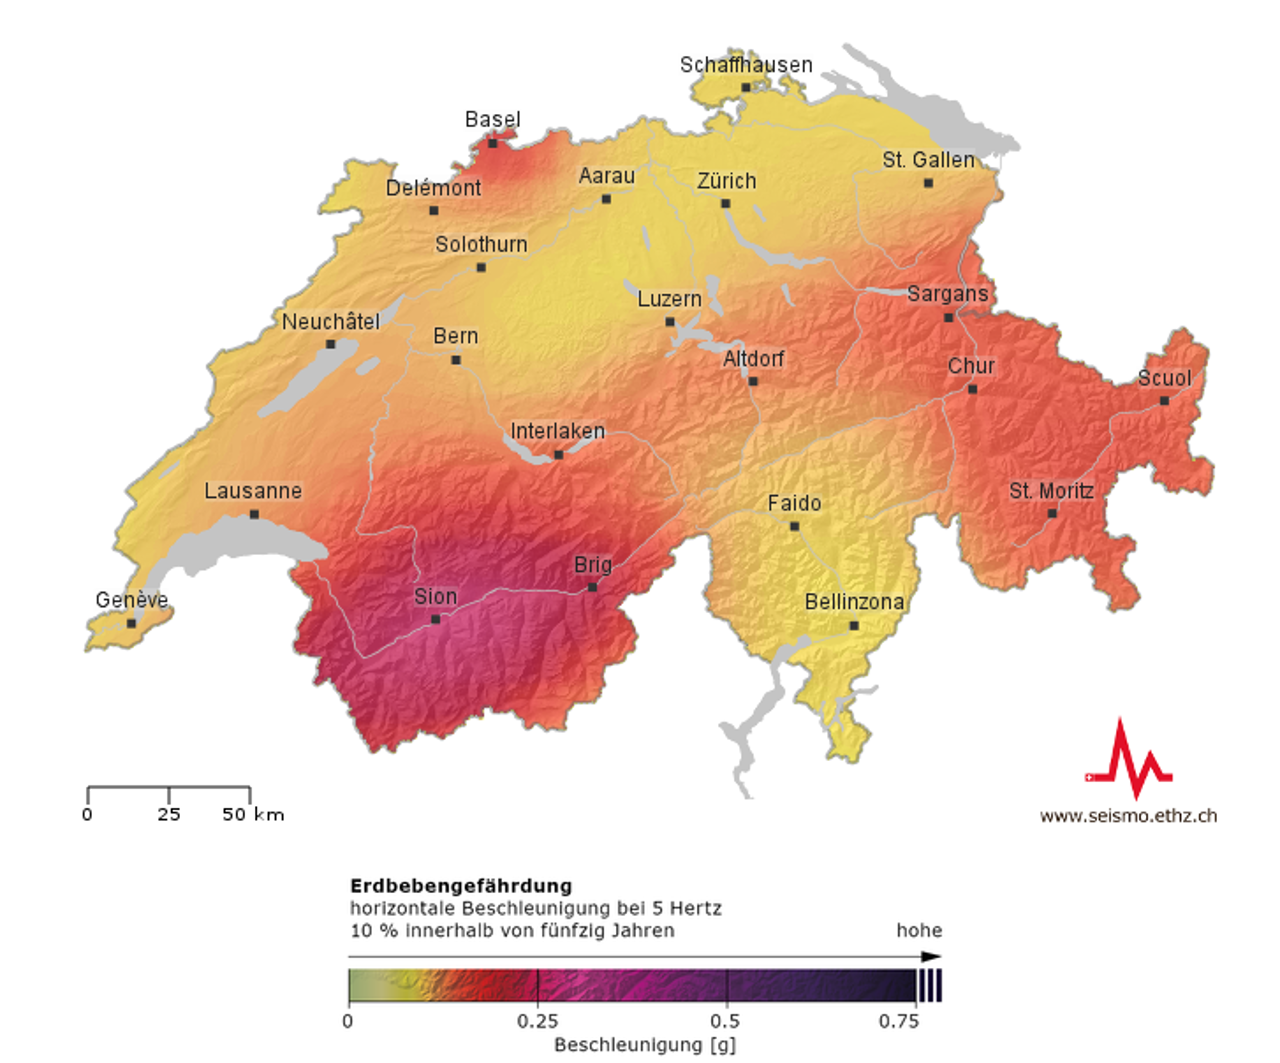 Die Karte zeigt die Erdbebenegefährdung in der Schweiz. 